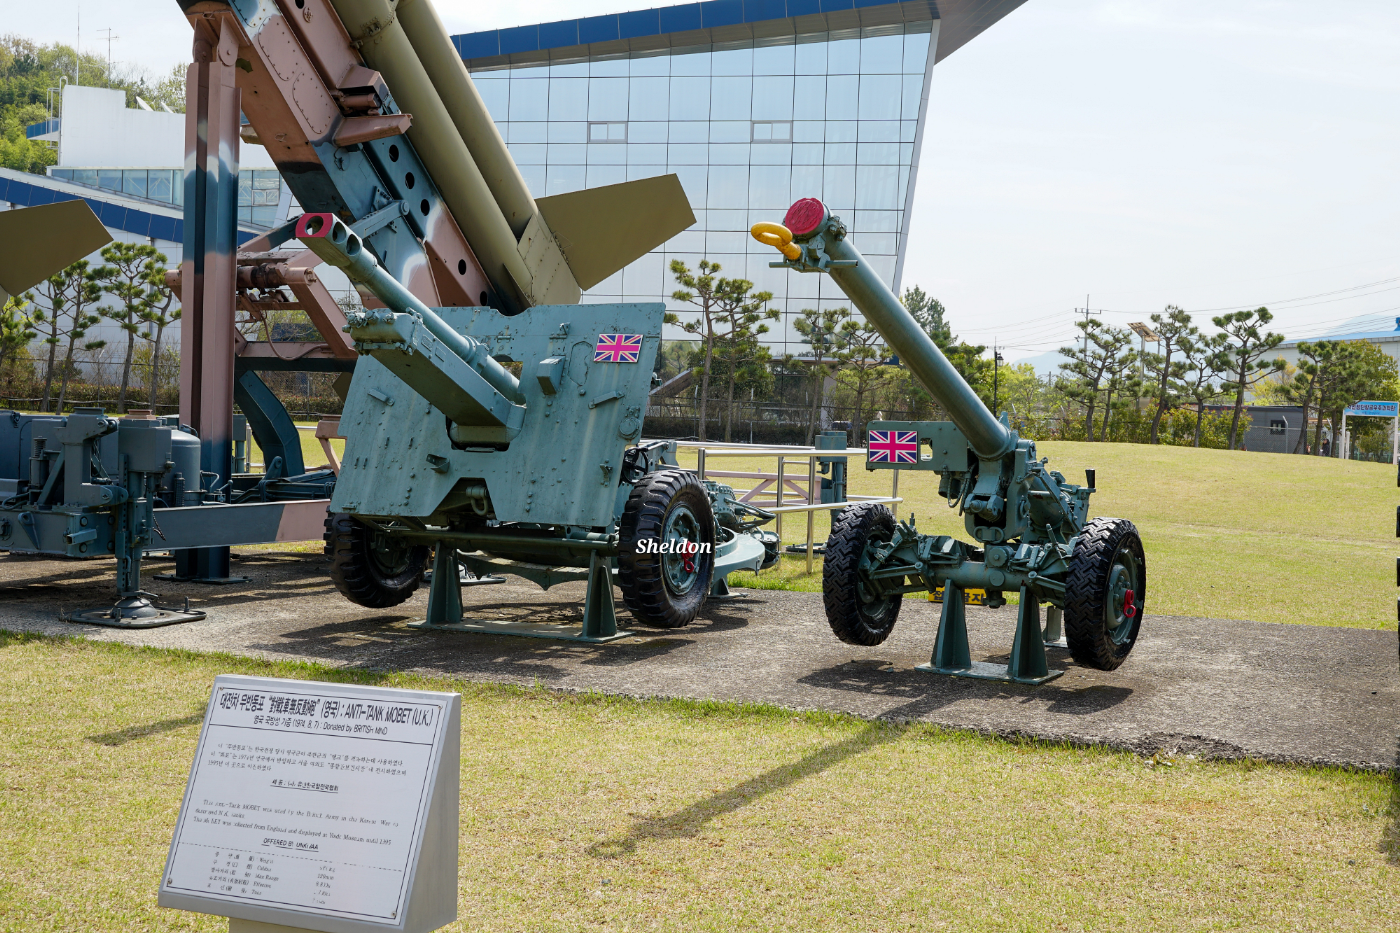 좌측의 QF 25-pounder는 홍콩 주둔 영국 육군에서 사용하던 견인포로, 1974년 영국 국방부로부터 기증받았다. 우측의 L4 MoBAT(우)은 120mm 대전차 무반동포이다. 1974년 8월 7일 영국 국방부로부터 기증받았으며 서울 여의도 종합안보전시장에 전시되어 있다가 1995년 KAI 항공우주박물관으로 이전하였다.